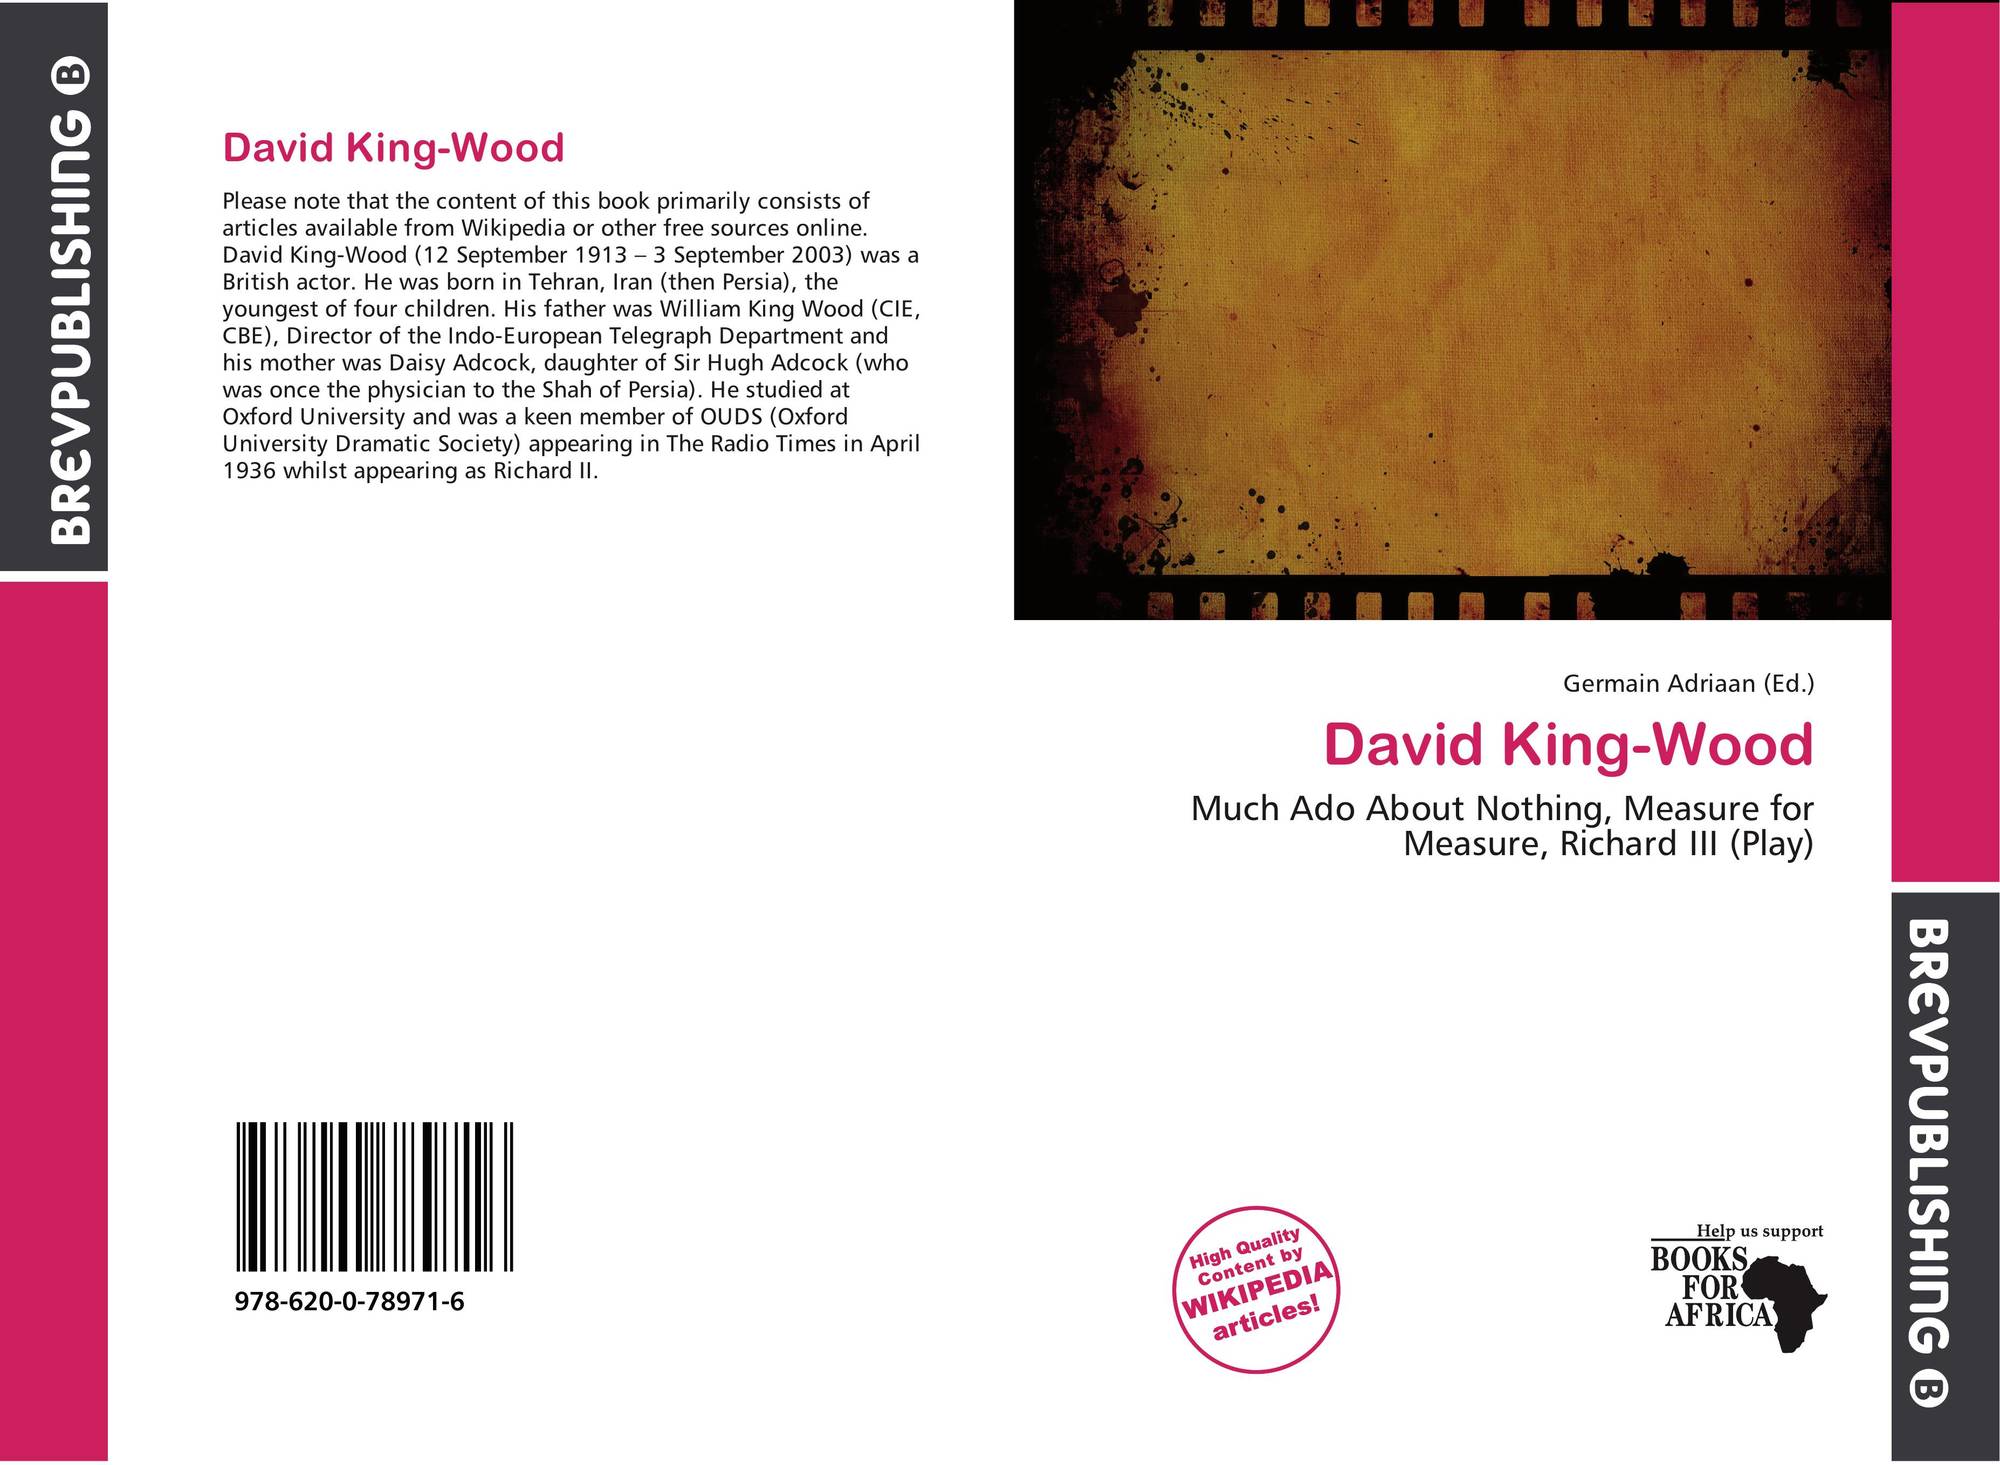 David King-Wood, 978-620-0-78971-6, 6200789711 ,9786200789716